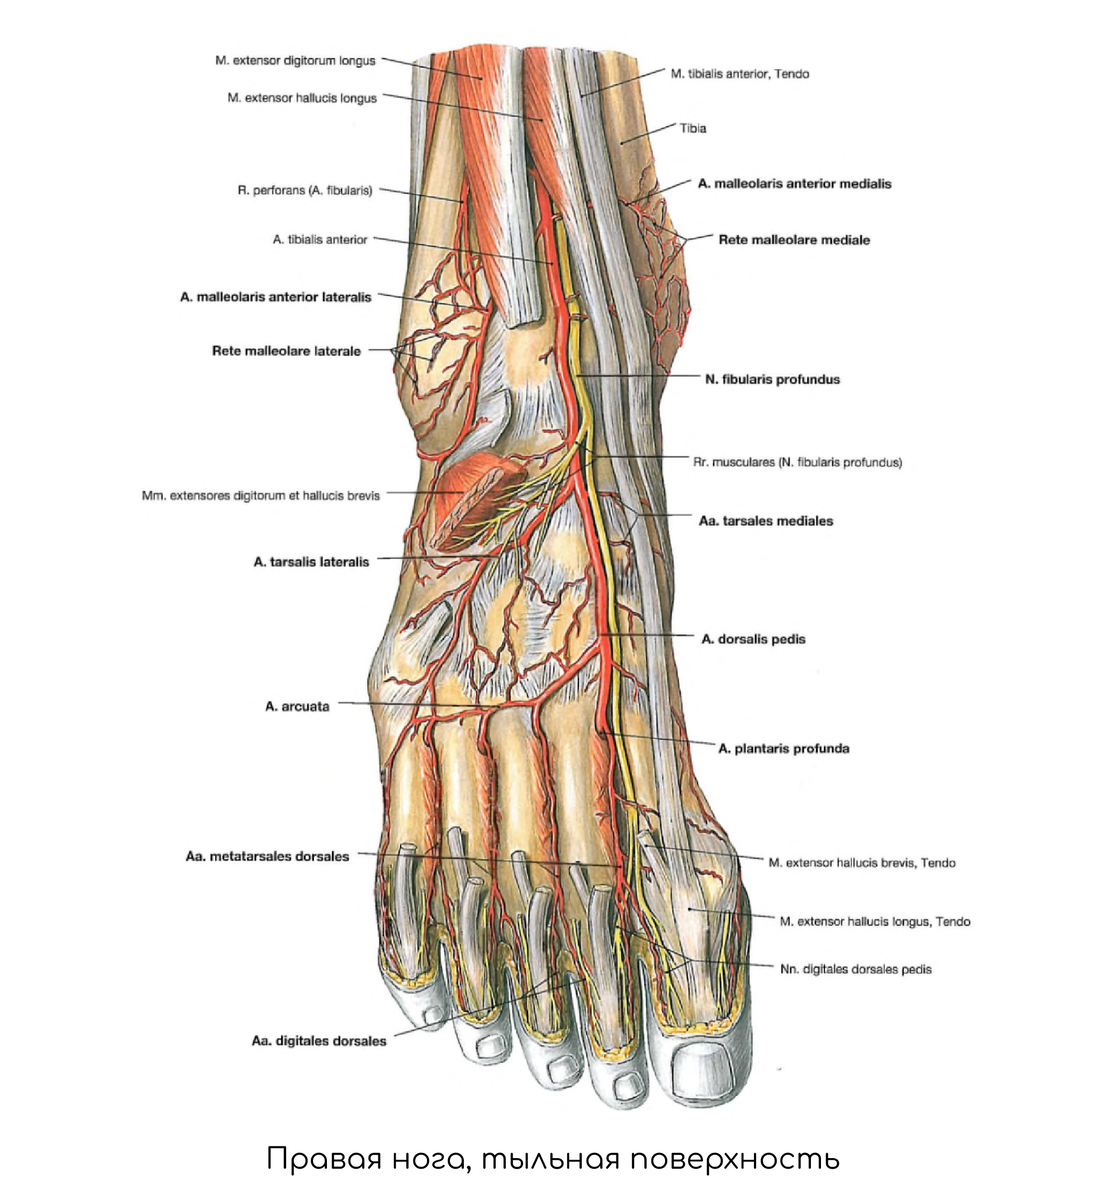 Основные артерии стопы. Артерии стопы анатомия. Артерия дорсалис педис. Тыльная артериальная дуга стопы.